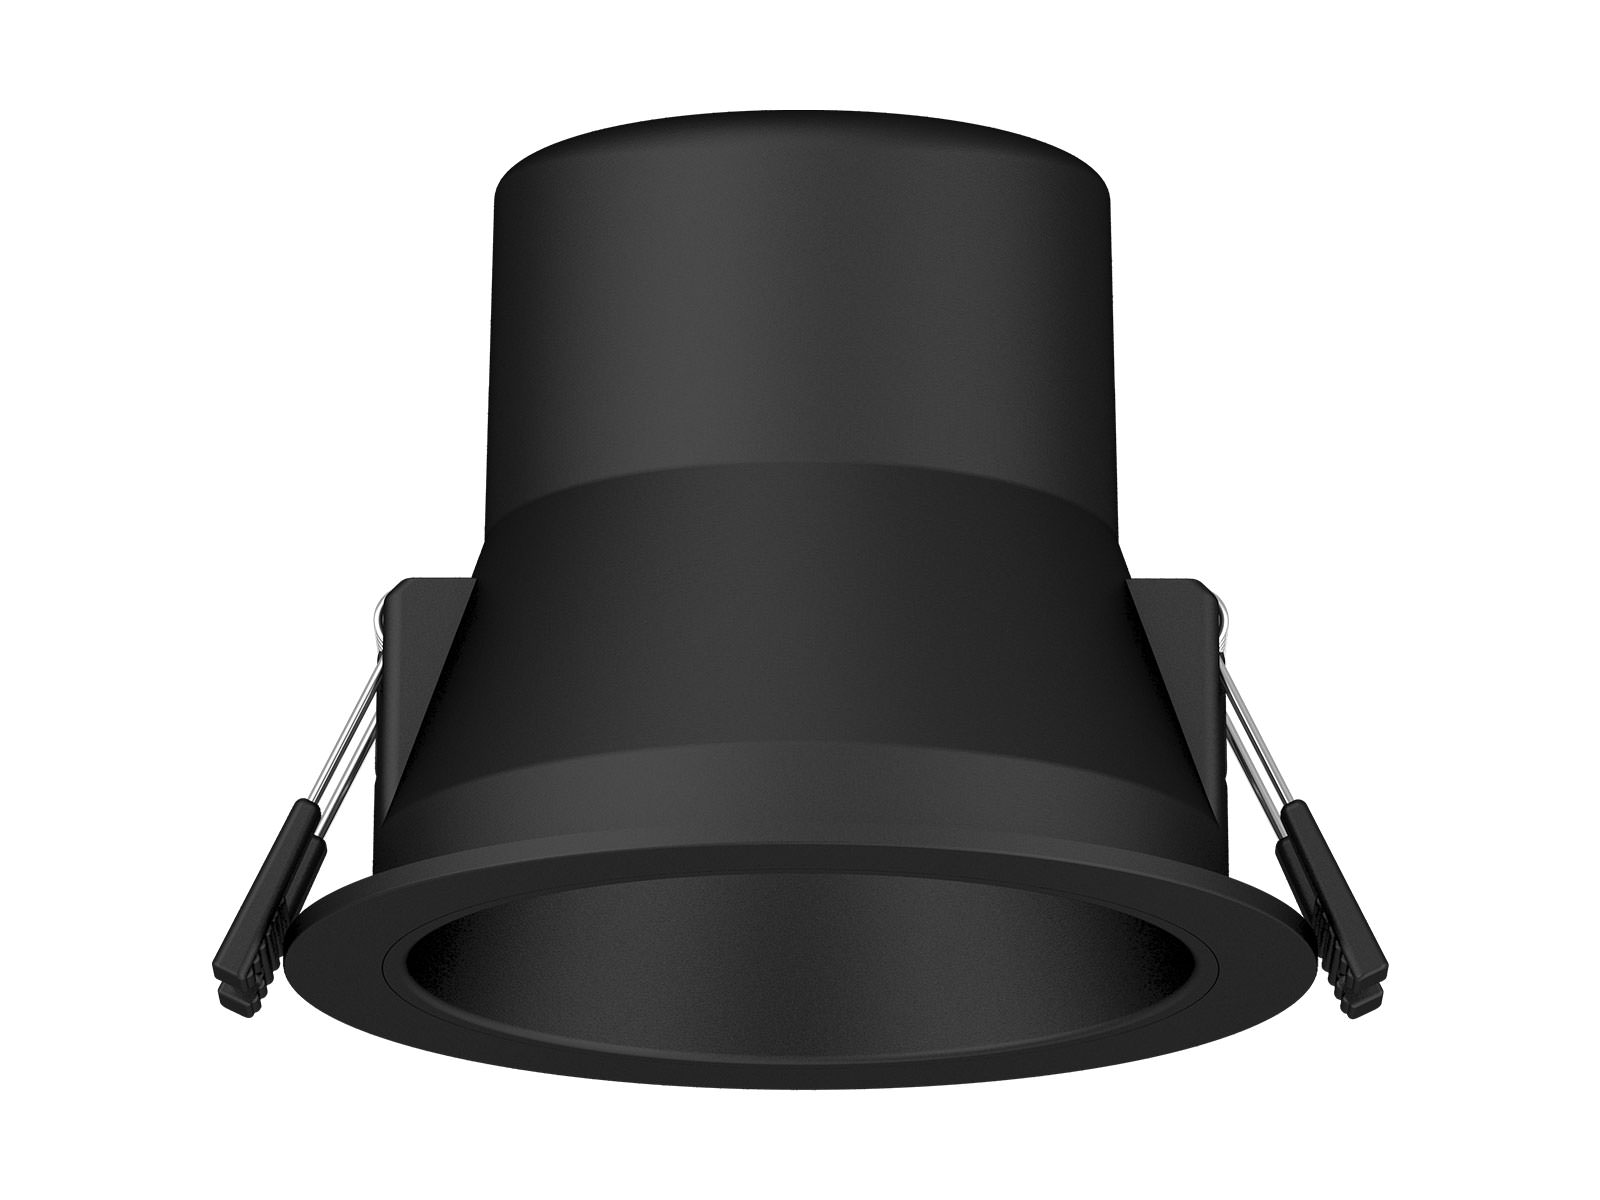 DL304 LED Downlight black color IP54 waterproof